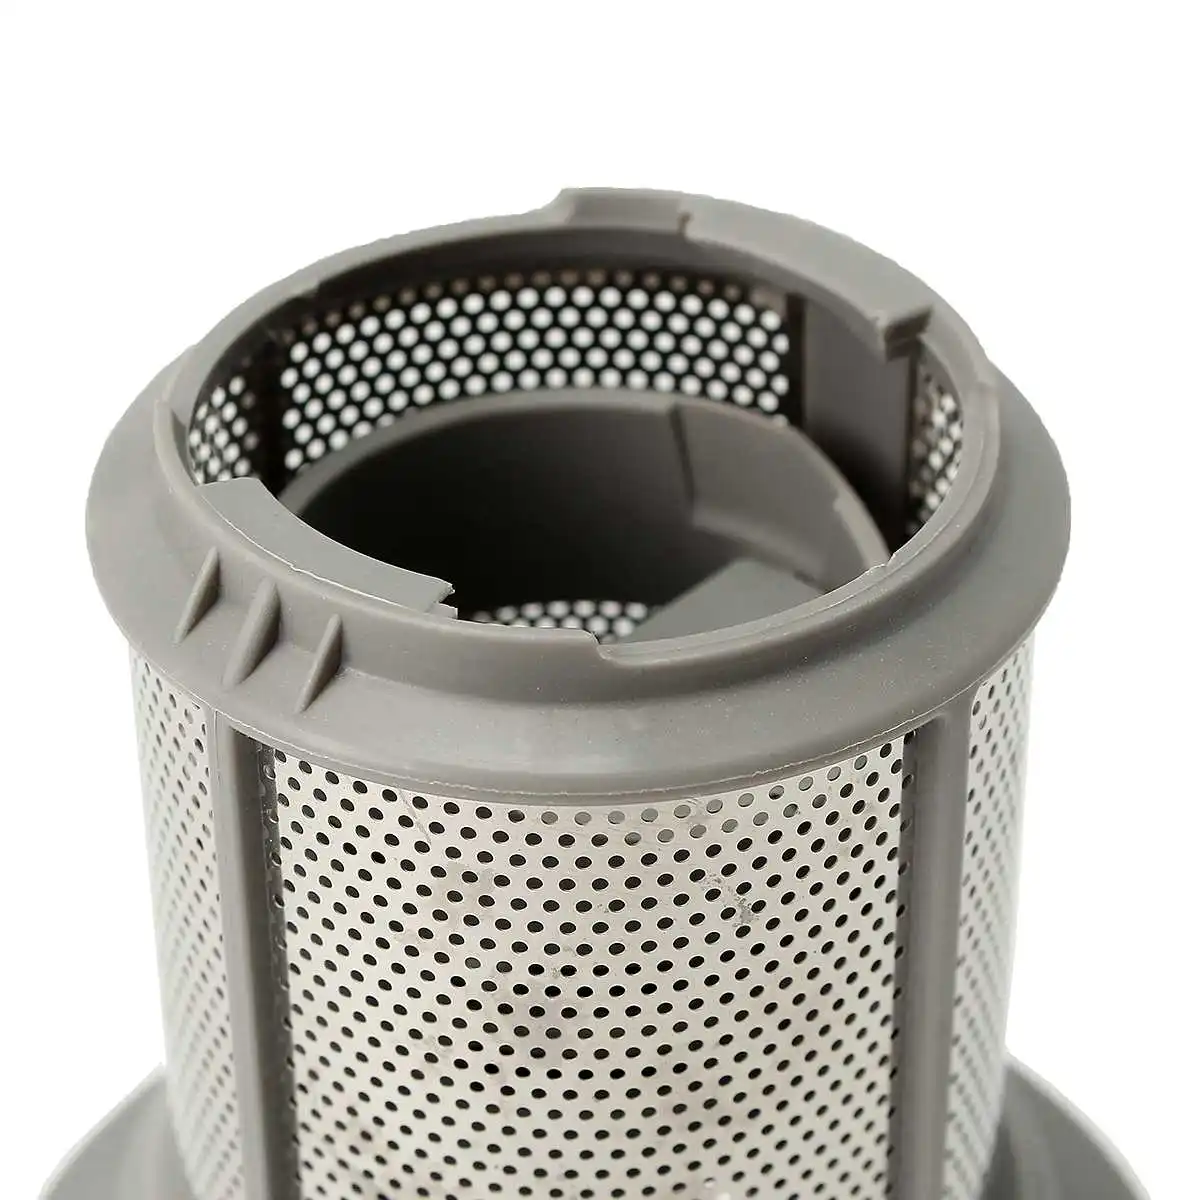 2 части набор сетчатых фильтров для посудомоечной машины серый полипропилен+ нержавеющая сталь для посудомоечной машины Bosch серии 427903 170740 Замена для посудомоечной машины